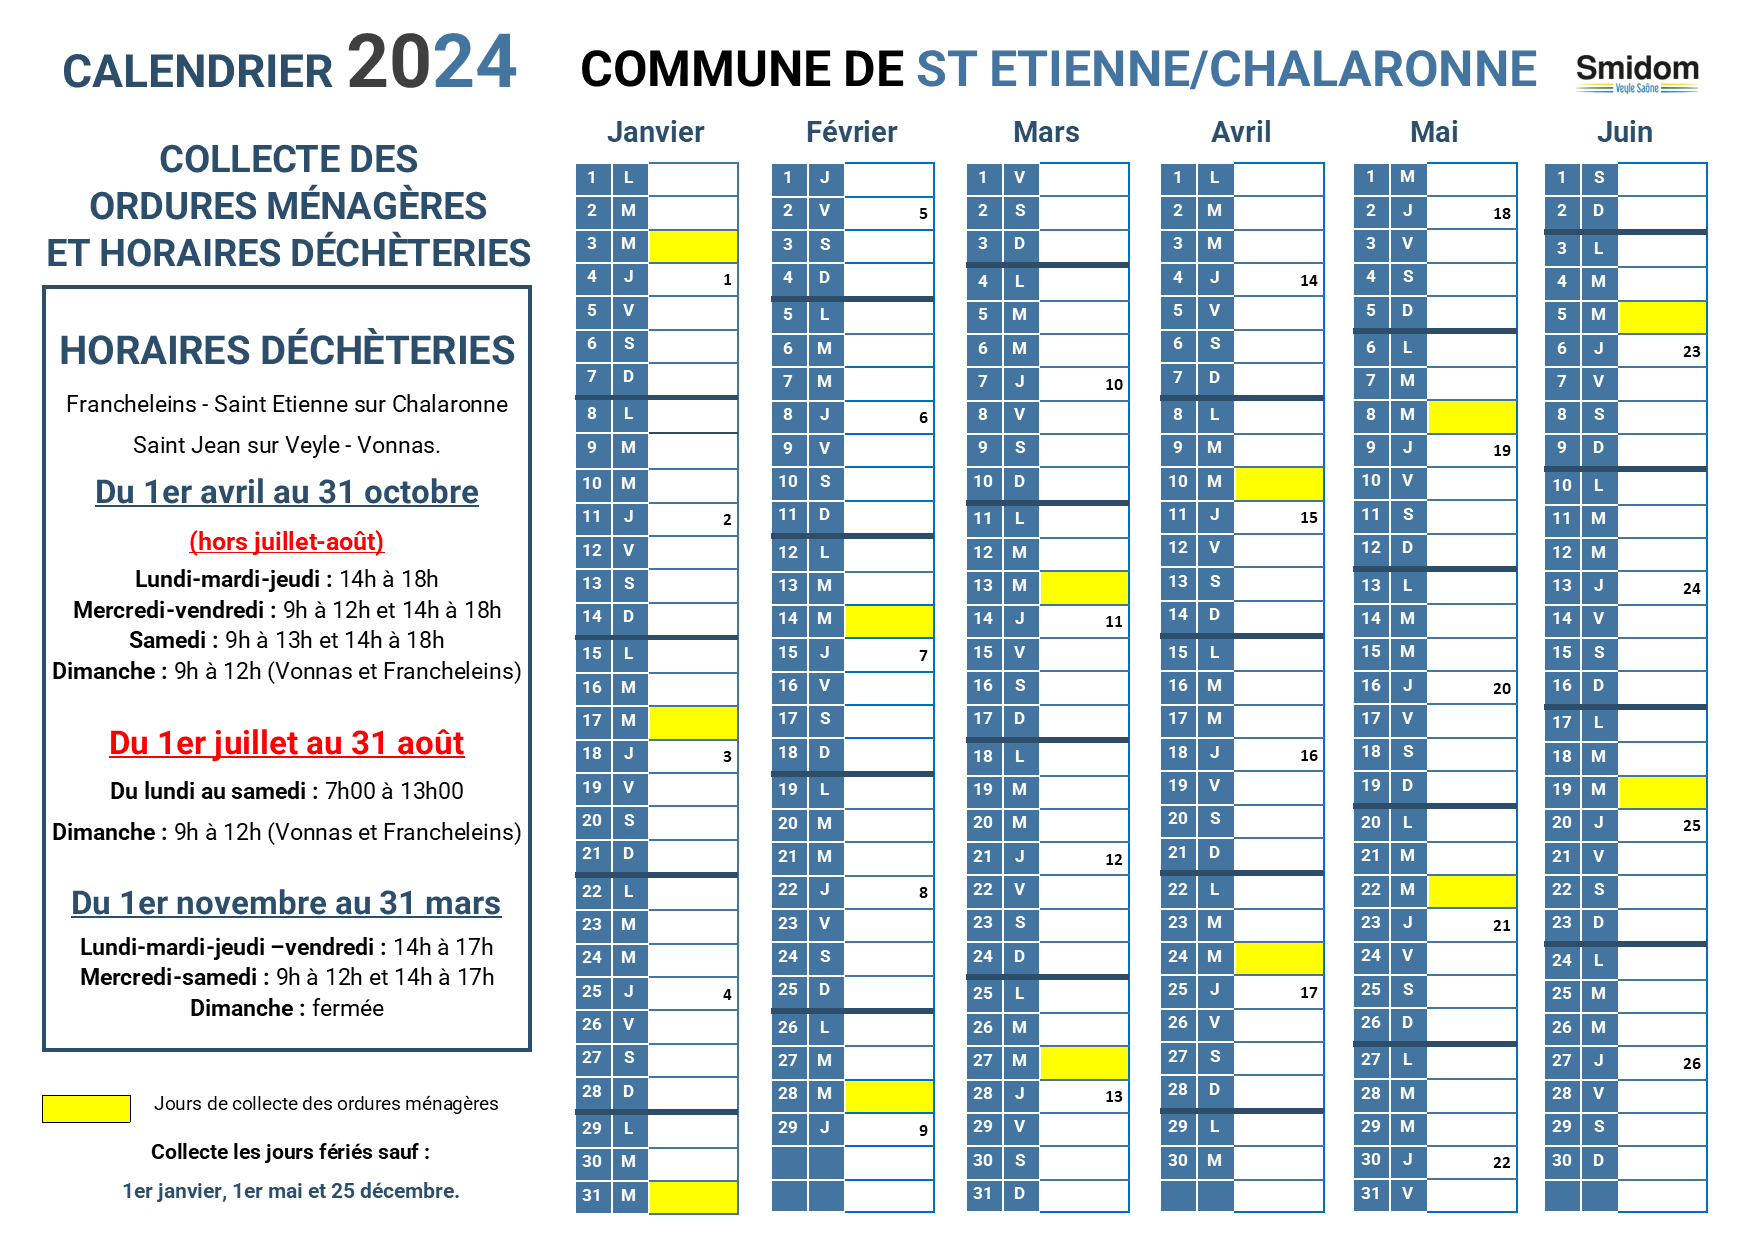 SAINT ETIENNE SUR CHALARONNE - Calendrier 2024.png